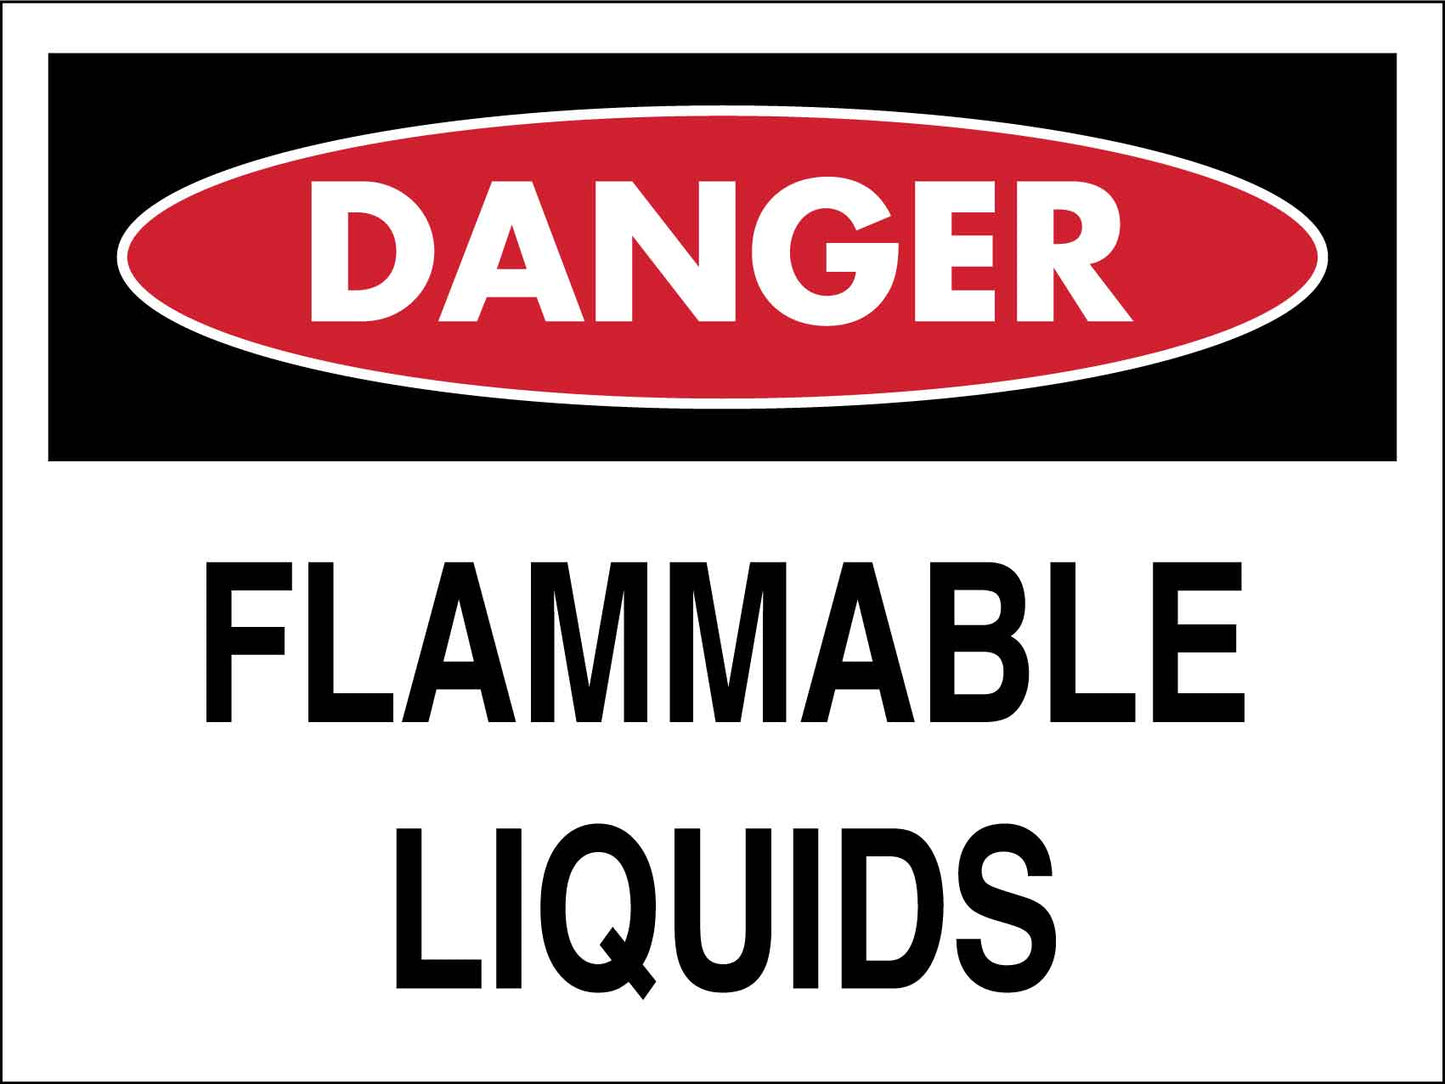 Danger Flammable Liquids Sign